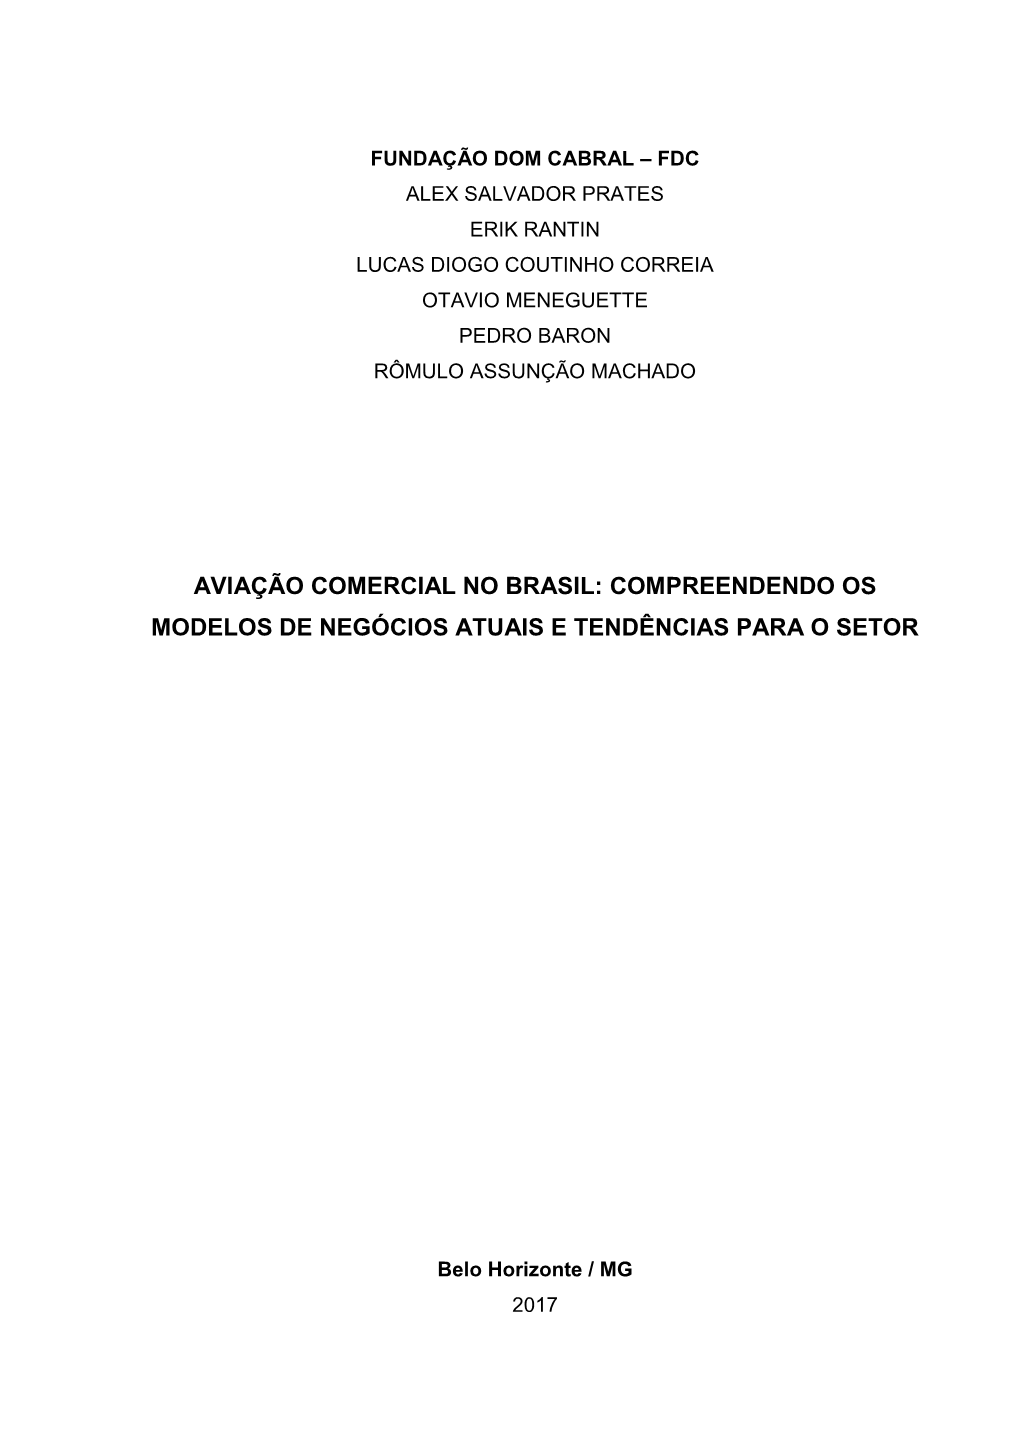 Aviação Comercial No Brasil.Pdf